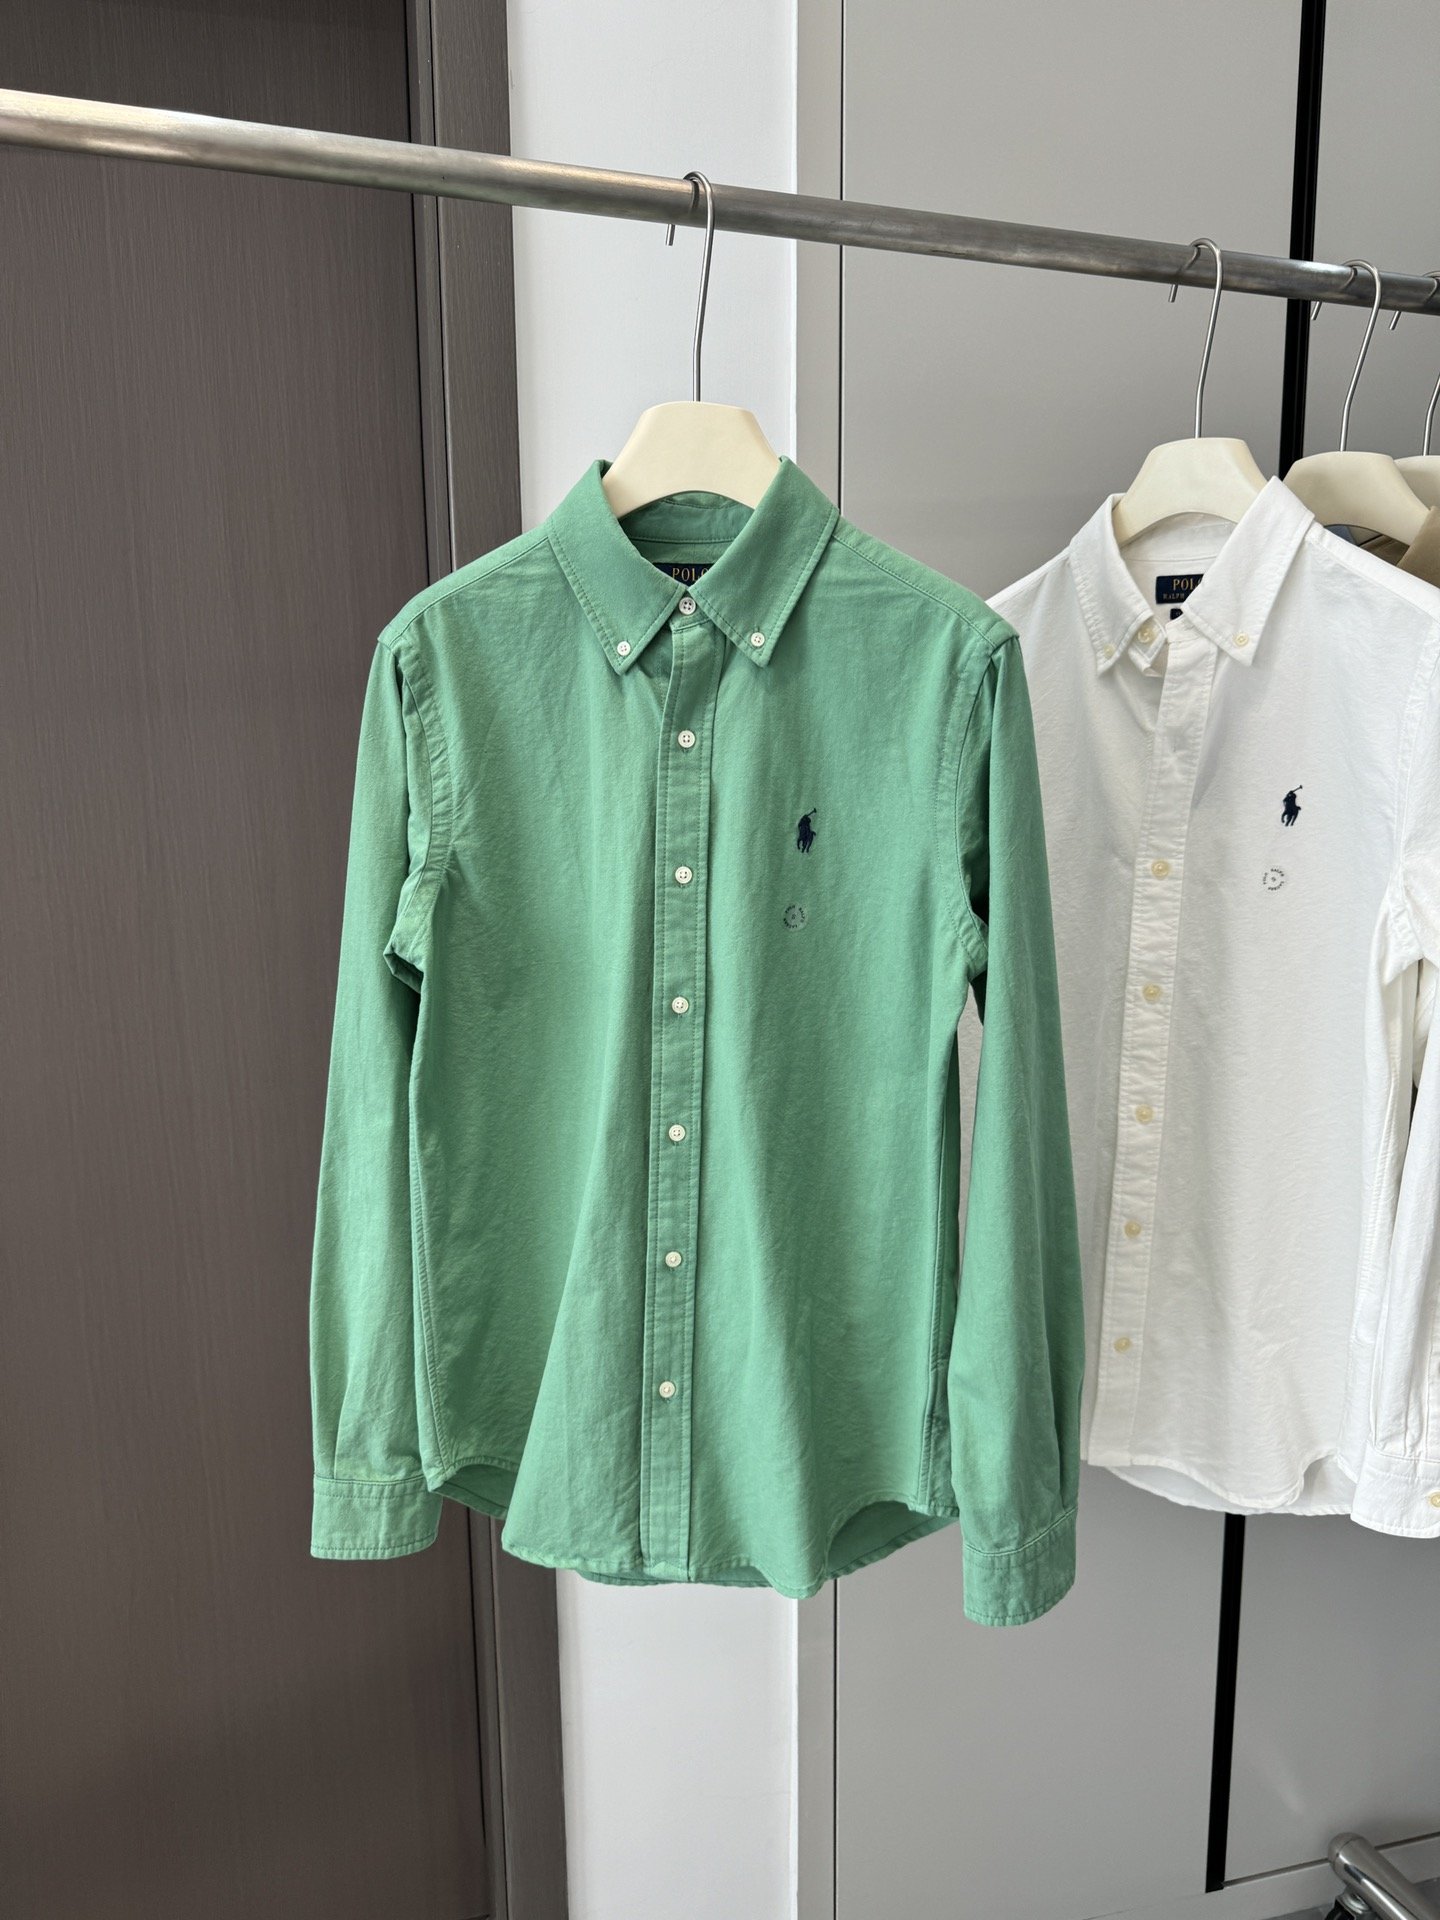 绿色\n上身很高级/绝对是衬衫面料中的极品✅\n拉夫的亮色兜很出色，复古美式的那种感觉。